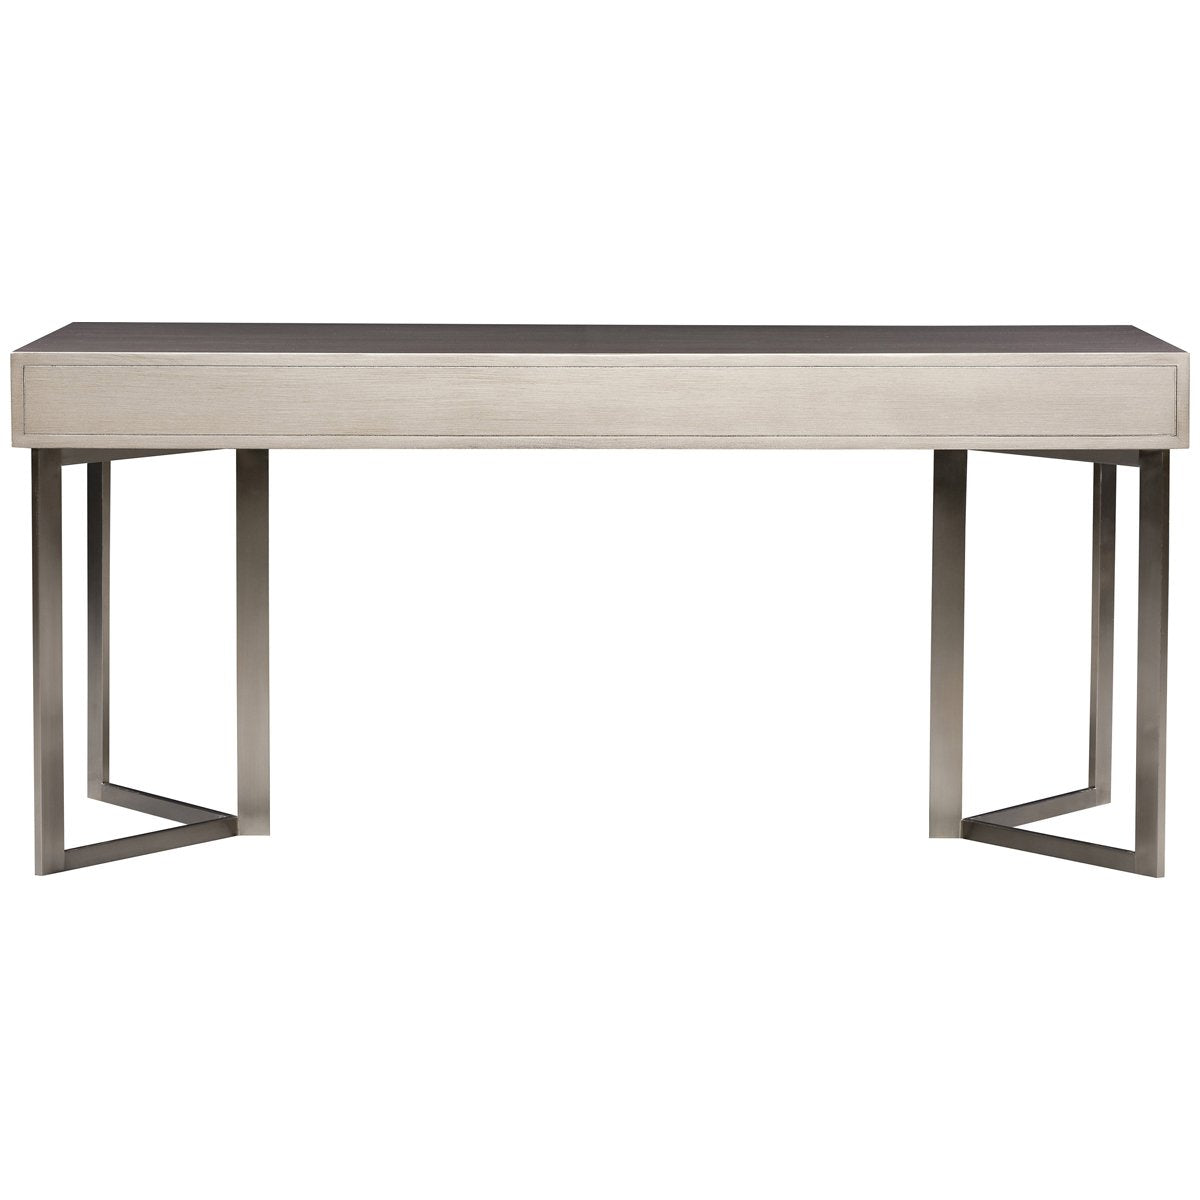 Vanguard Furniture Berkley Desk with Metal V Base